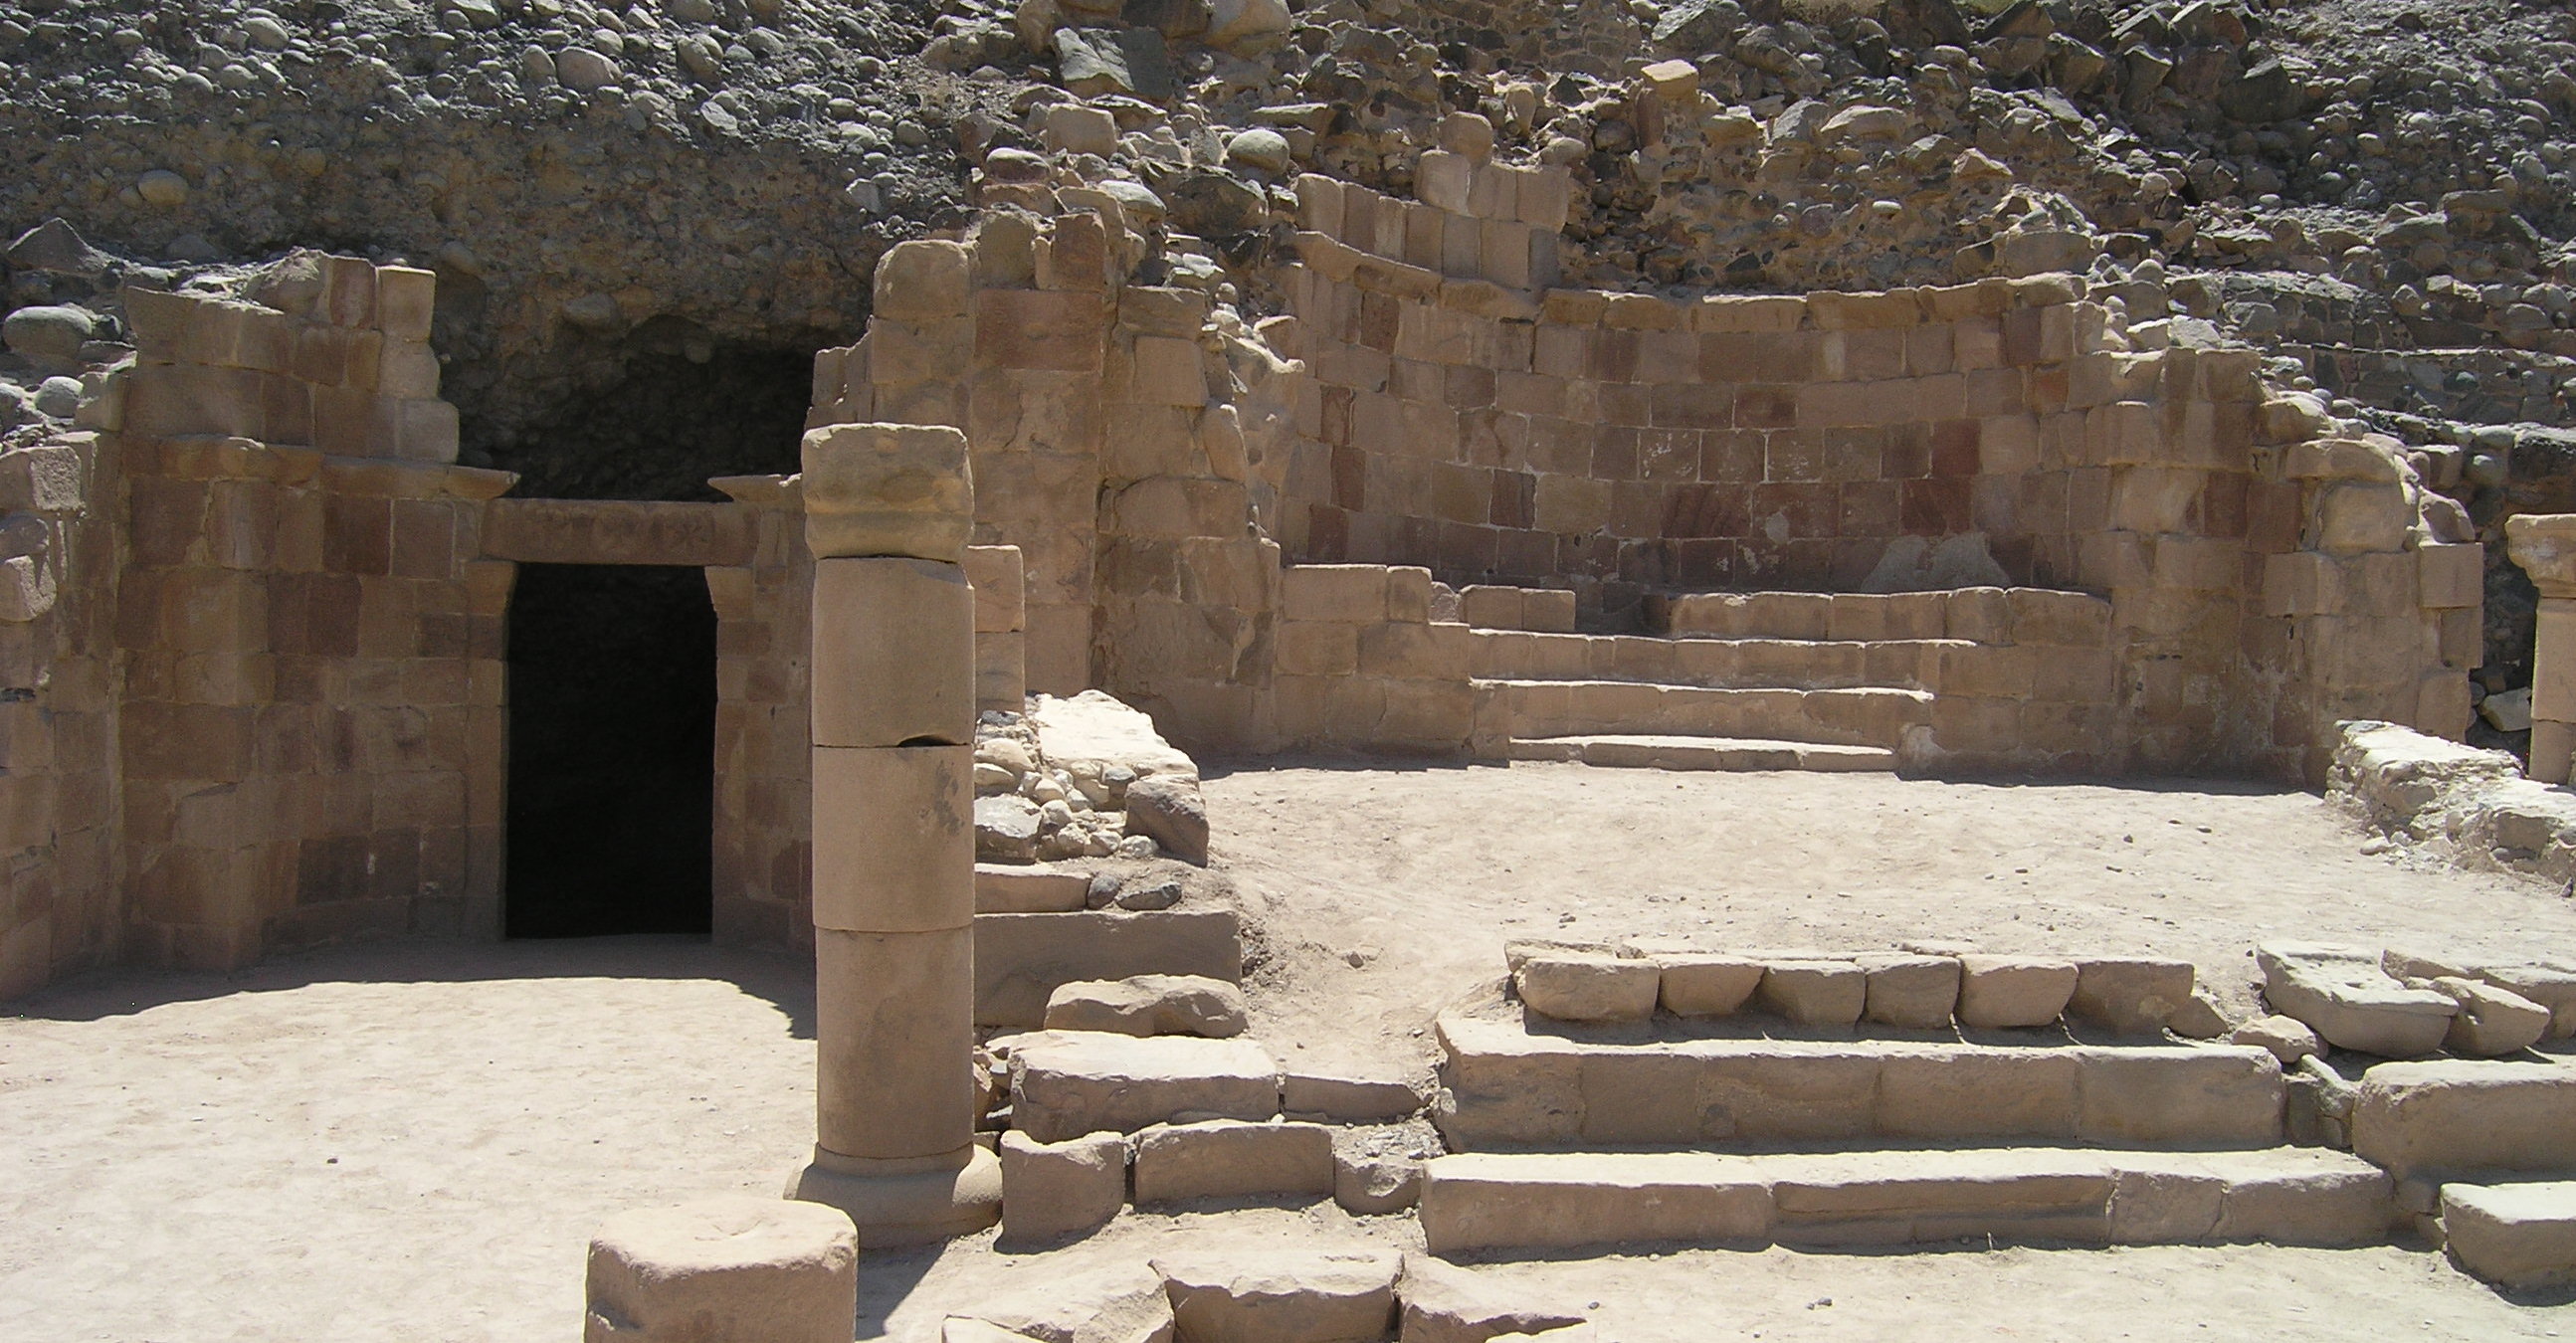 Zu sehen ist ein ruinenartiger Bereich vor einem Felsen. In der rechten Bildhälfte sind Grundrisse eines Gebäudes mit Treppen darin erkennbar. Auf der linken Seite führt ein dunkler Eingang in den Berg hinein.